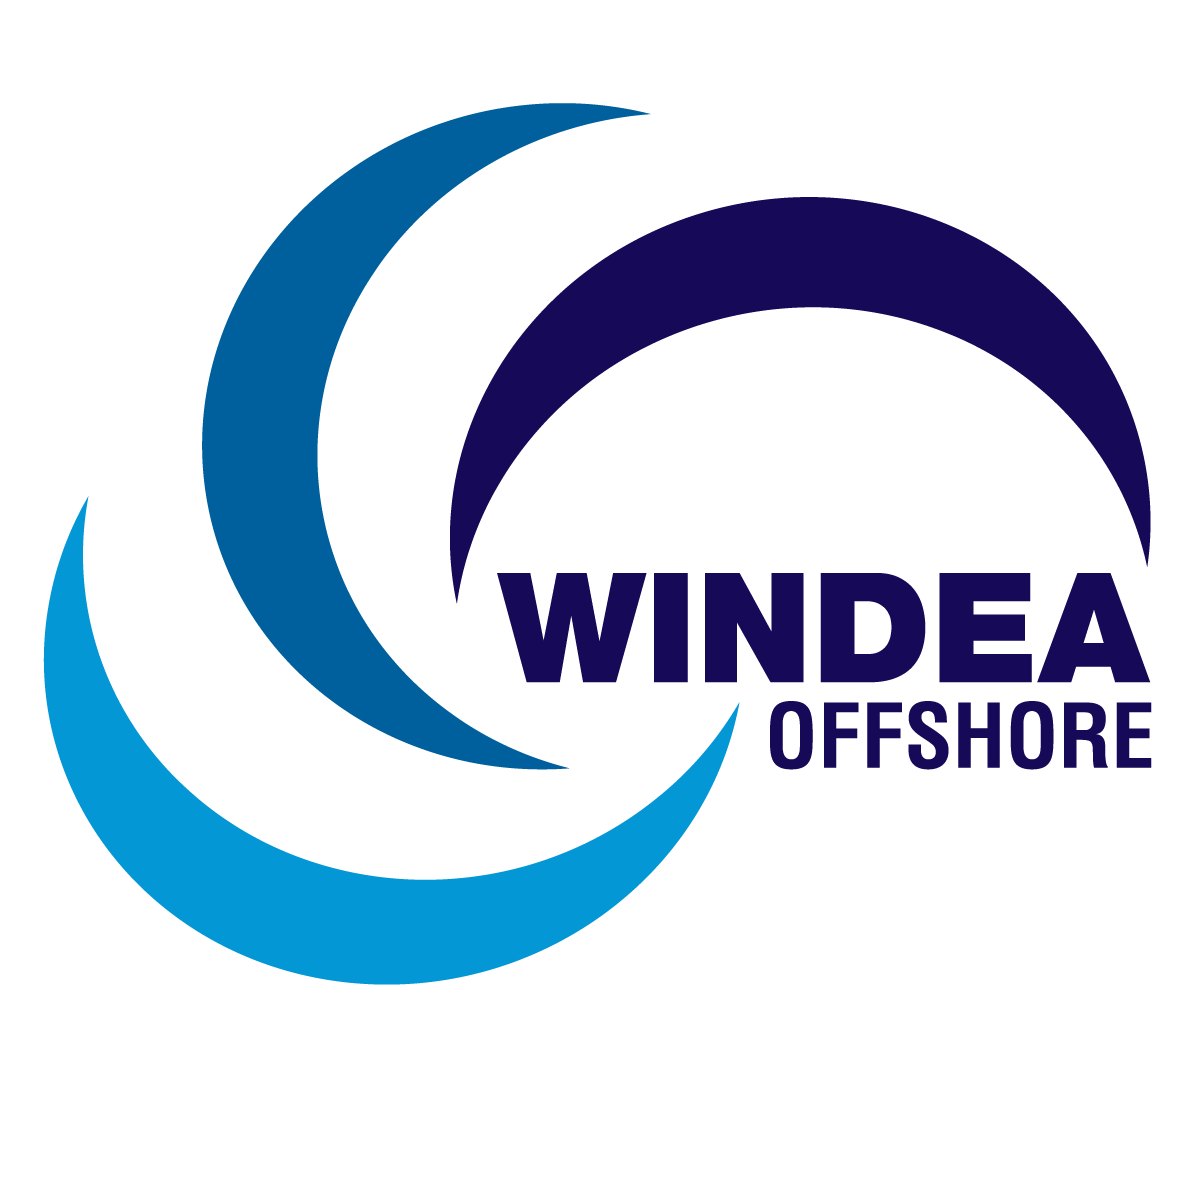 WINDEA Offshore GmbH & Co. KG